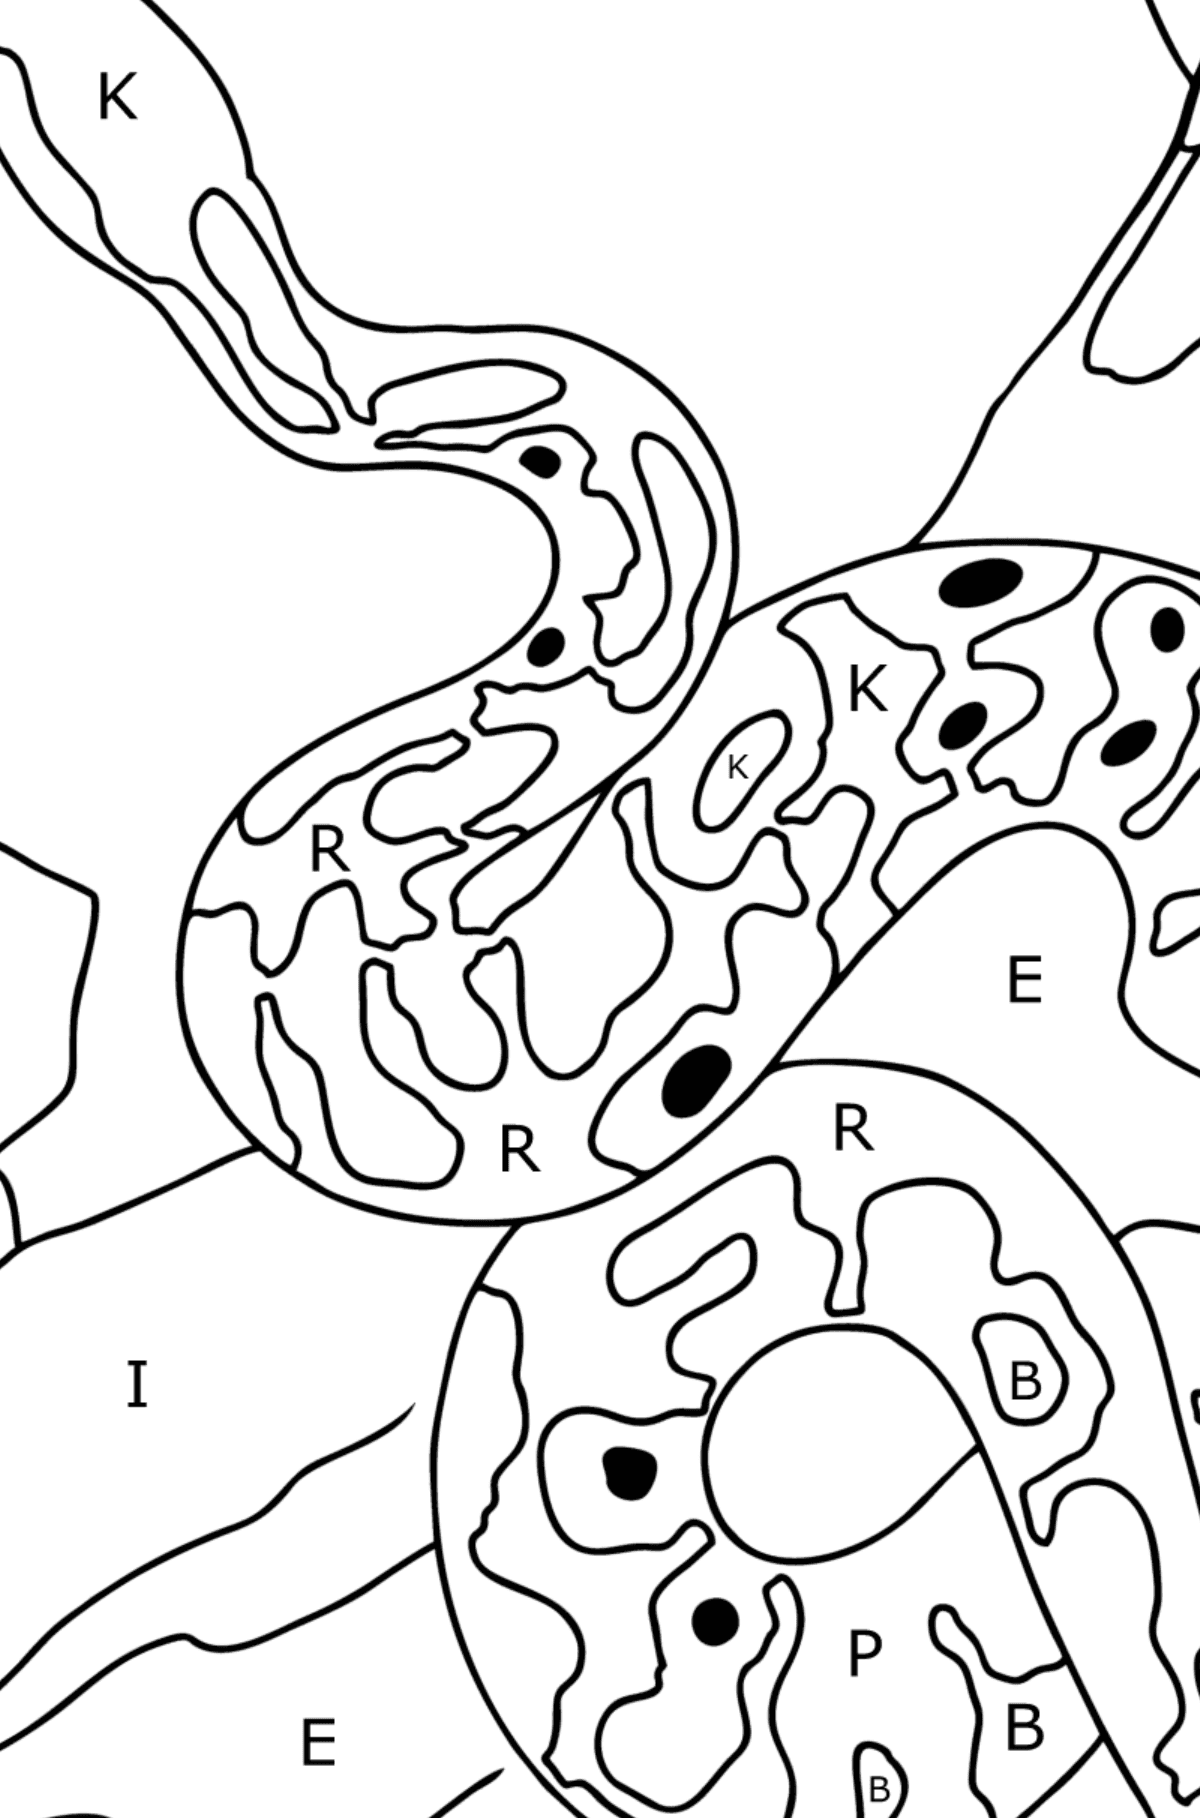 Disegno di Serpente da colorare - Colorare per lettere per bambini